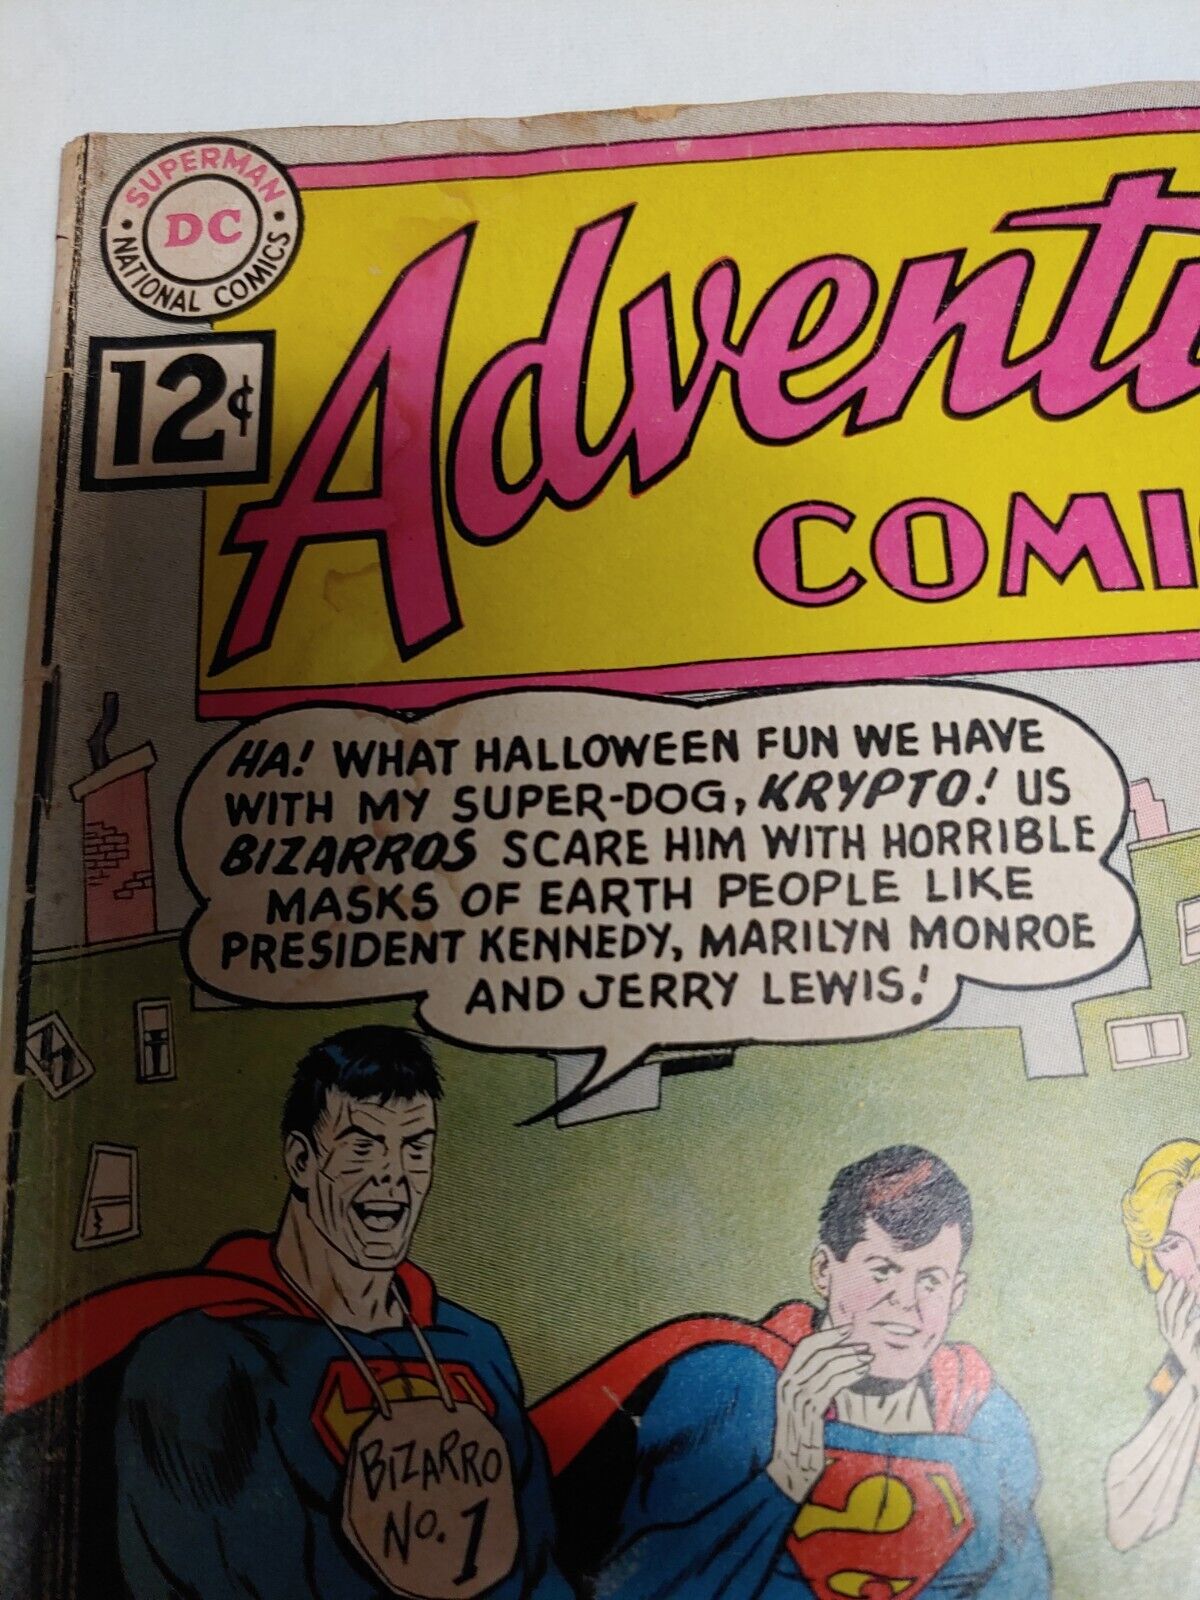 Lot of DC -Comics - 11 Superman- includes 1st Bizarro- (1963) - 1 Marvel comic